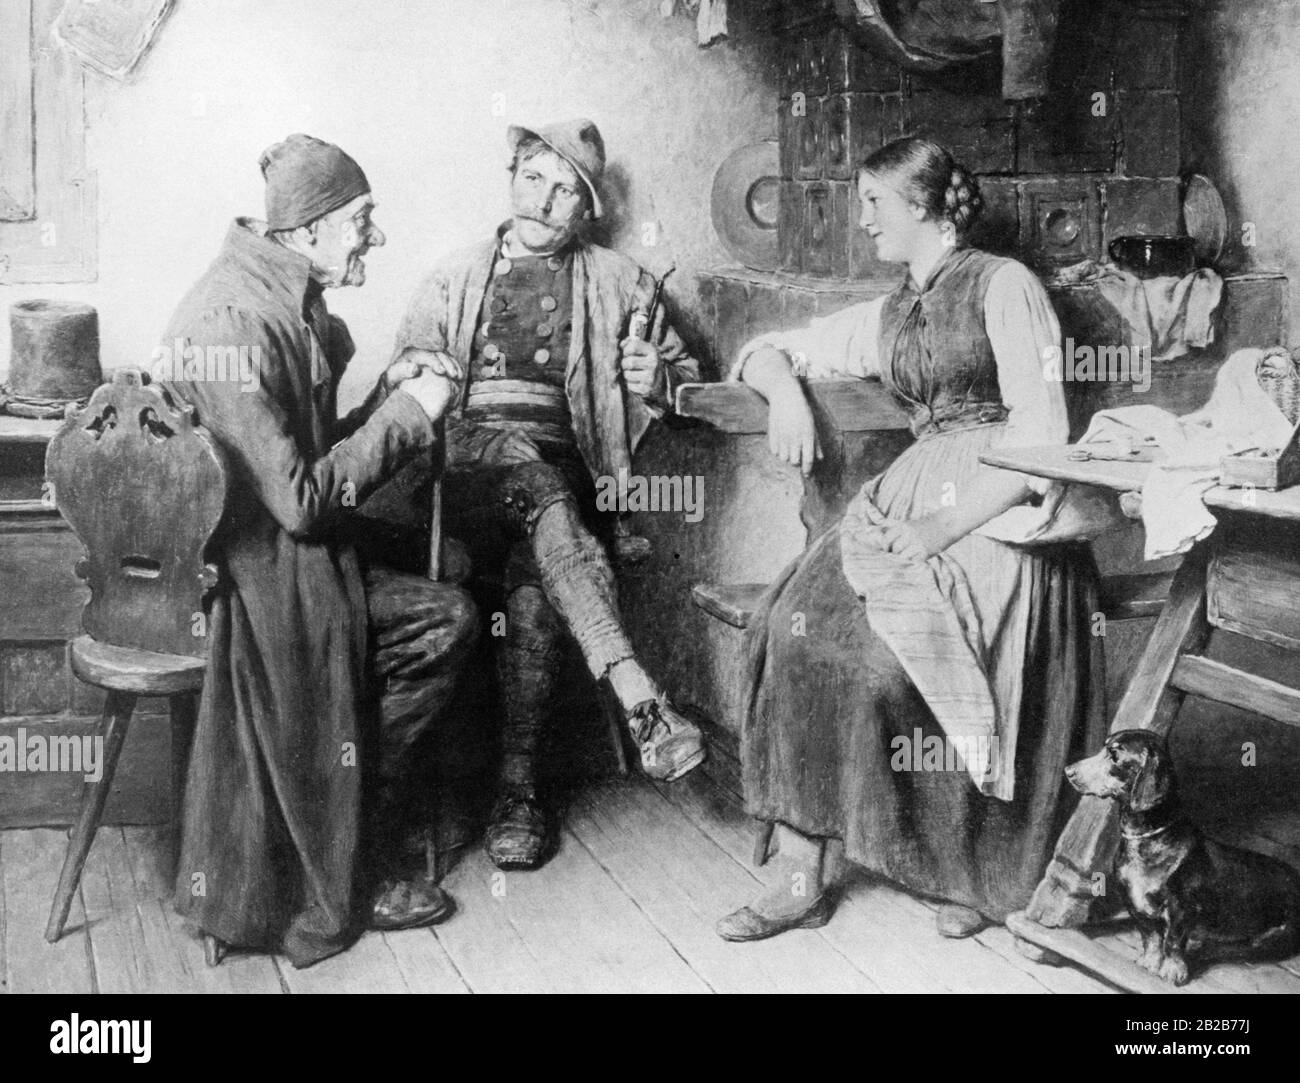 Im Raum neben dem Kachelofen sprechen eine Frau, ein Pfeifenraucher und ein älterer Herr zusammen. Ein idealisierendes Genregemälde des Bauernlebens von Hugo Kauffmann. Stockfoto